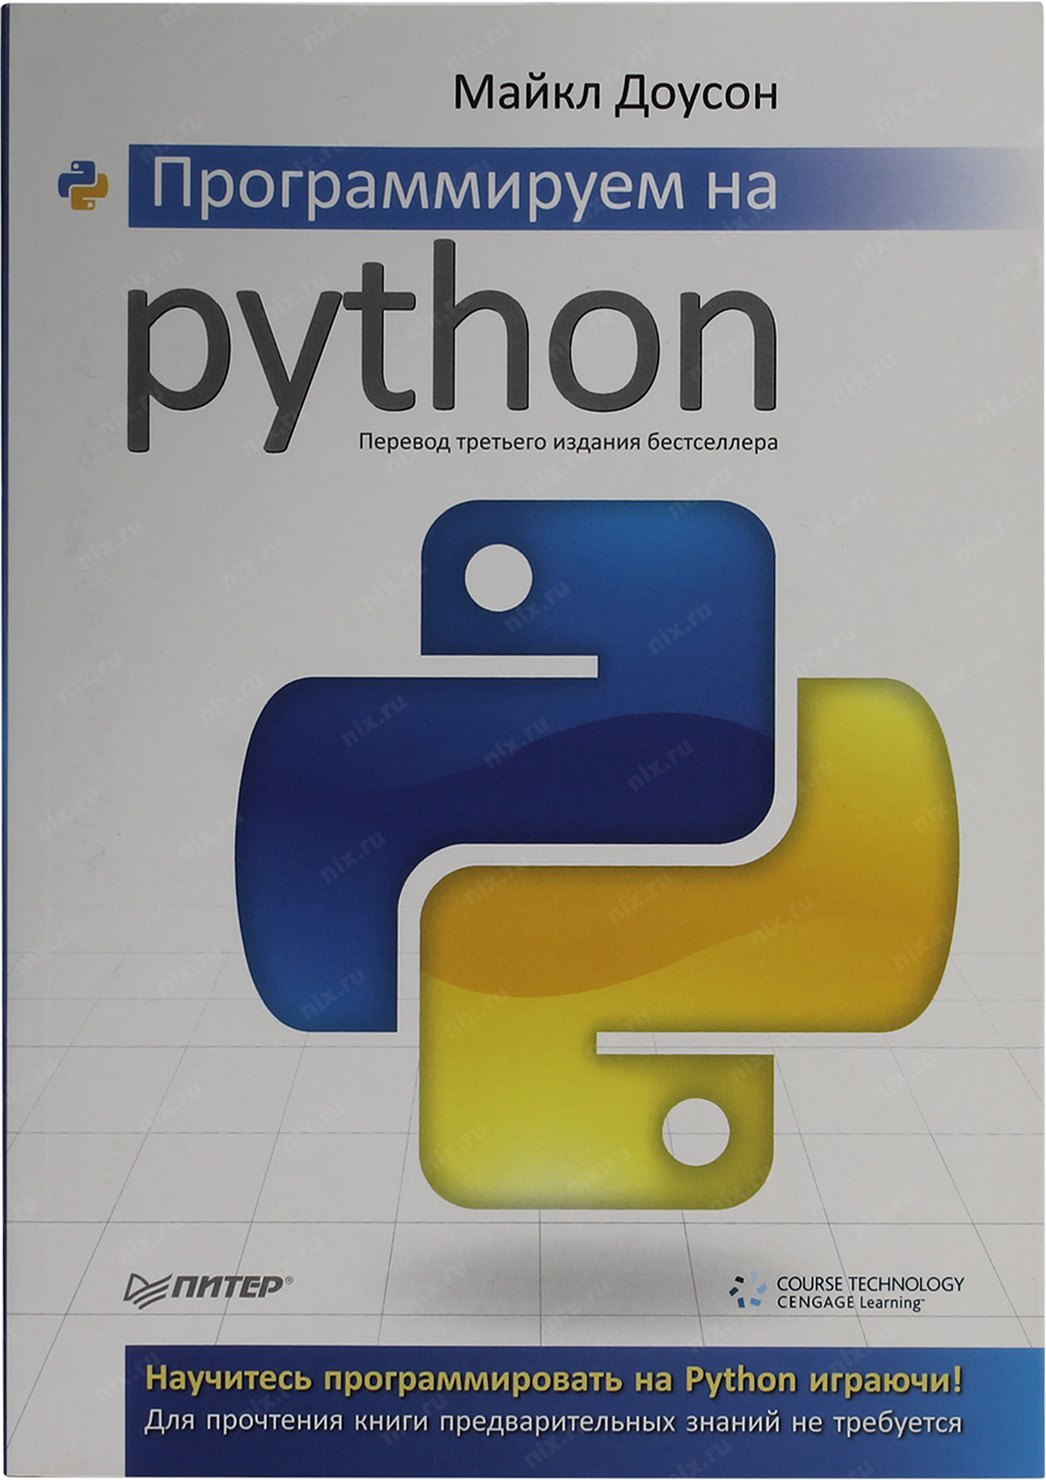 «Python — с нуля до первых проектов».